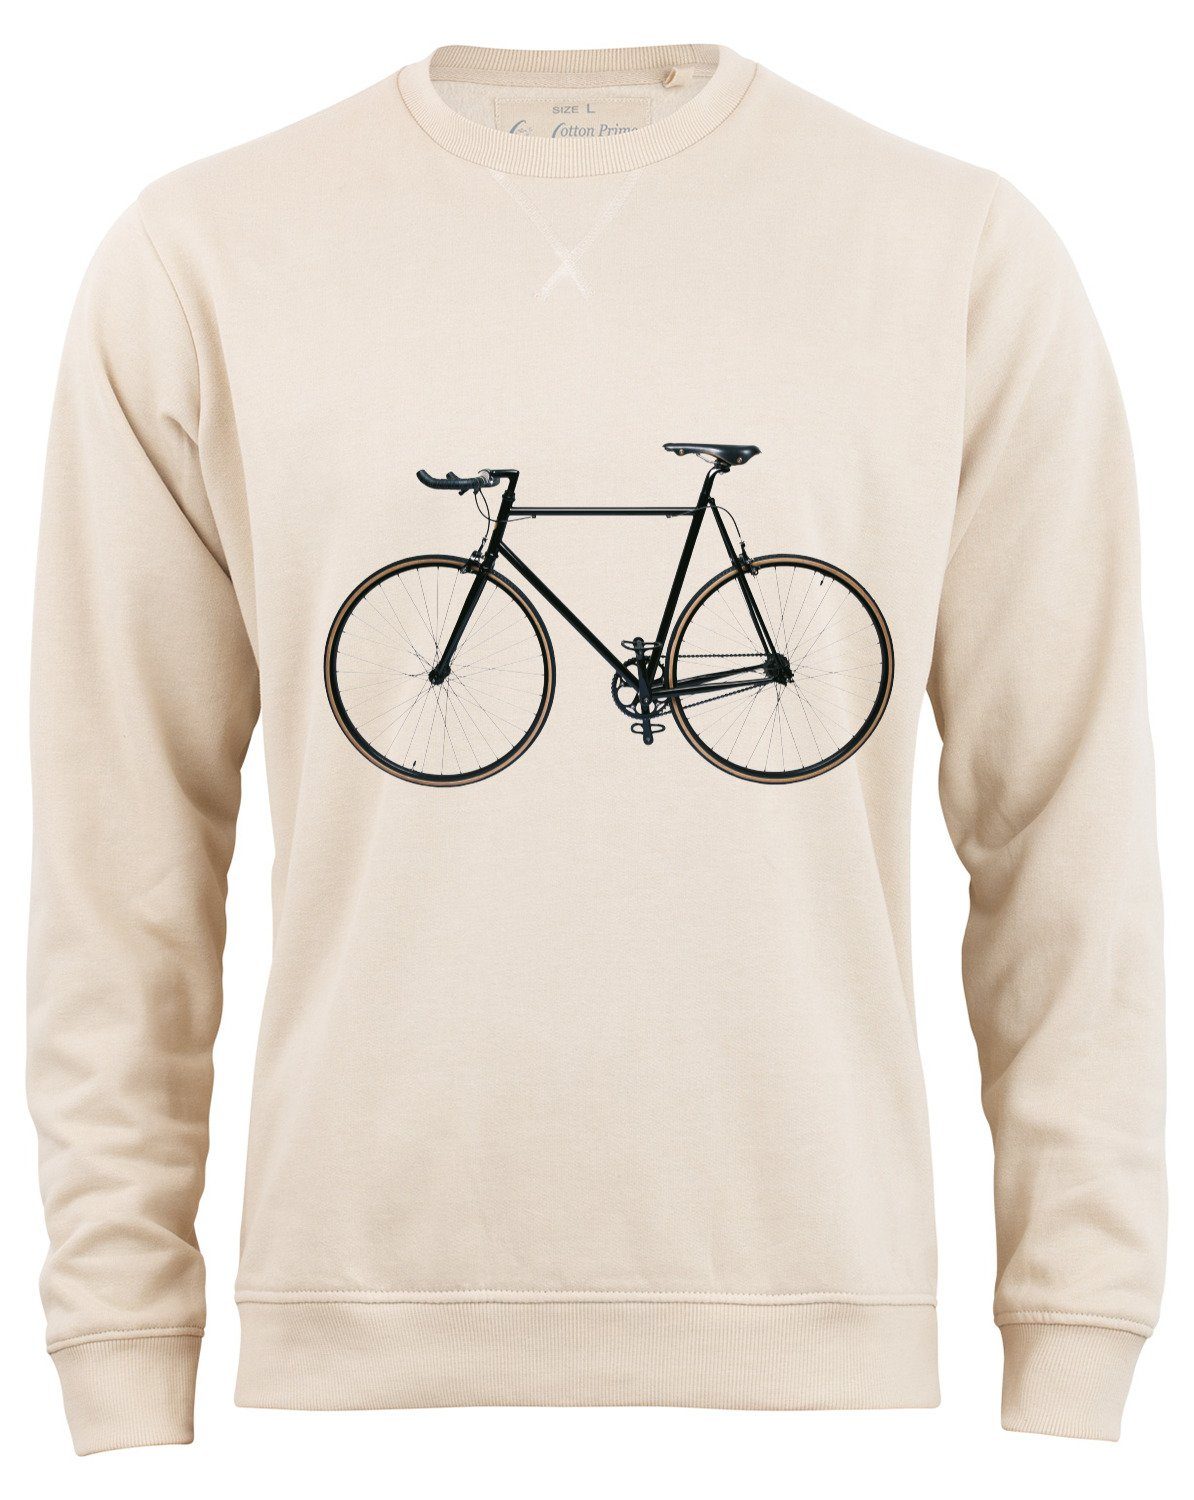 Cotton Prime® Sweatshirt Bike-Fahrrad mit weichem Innenfleece Beige | Sweatshirts